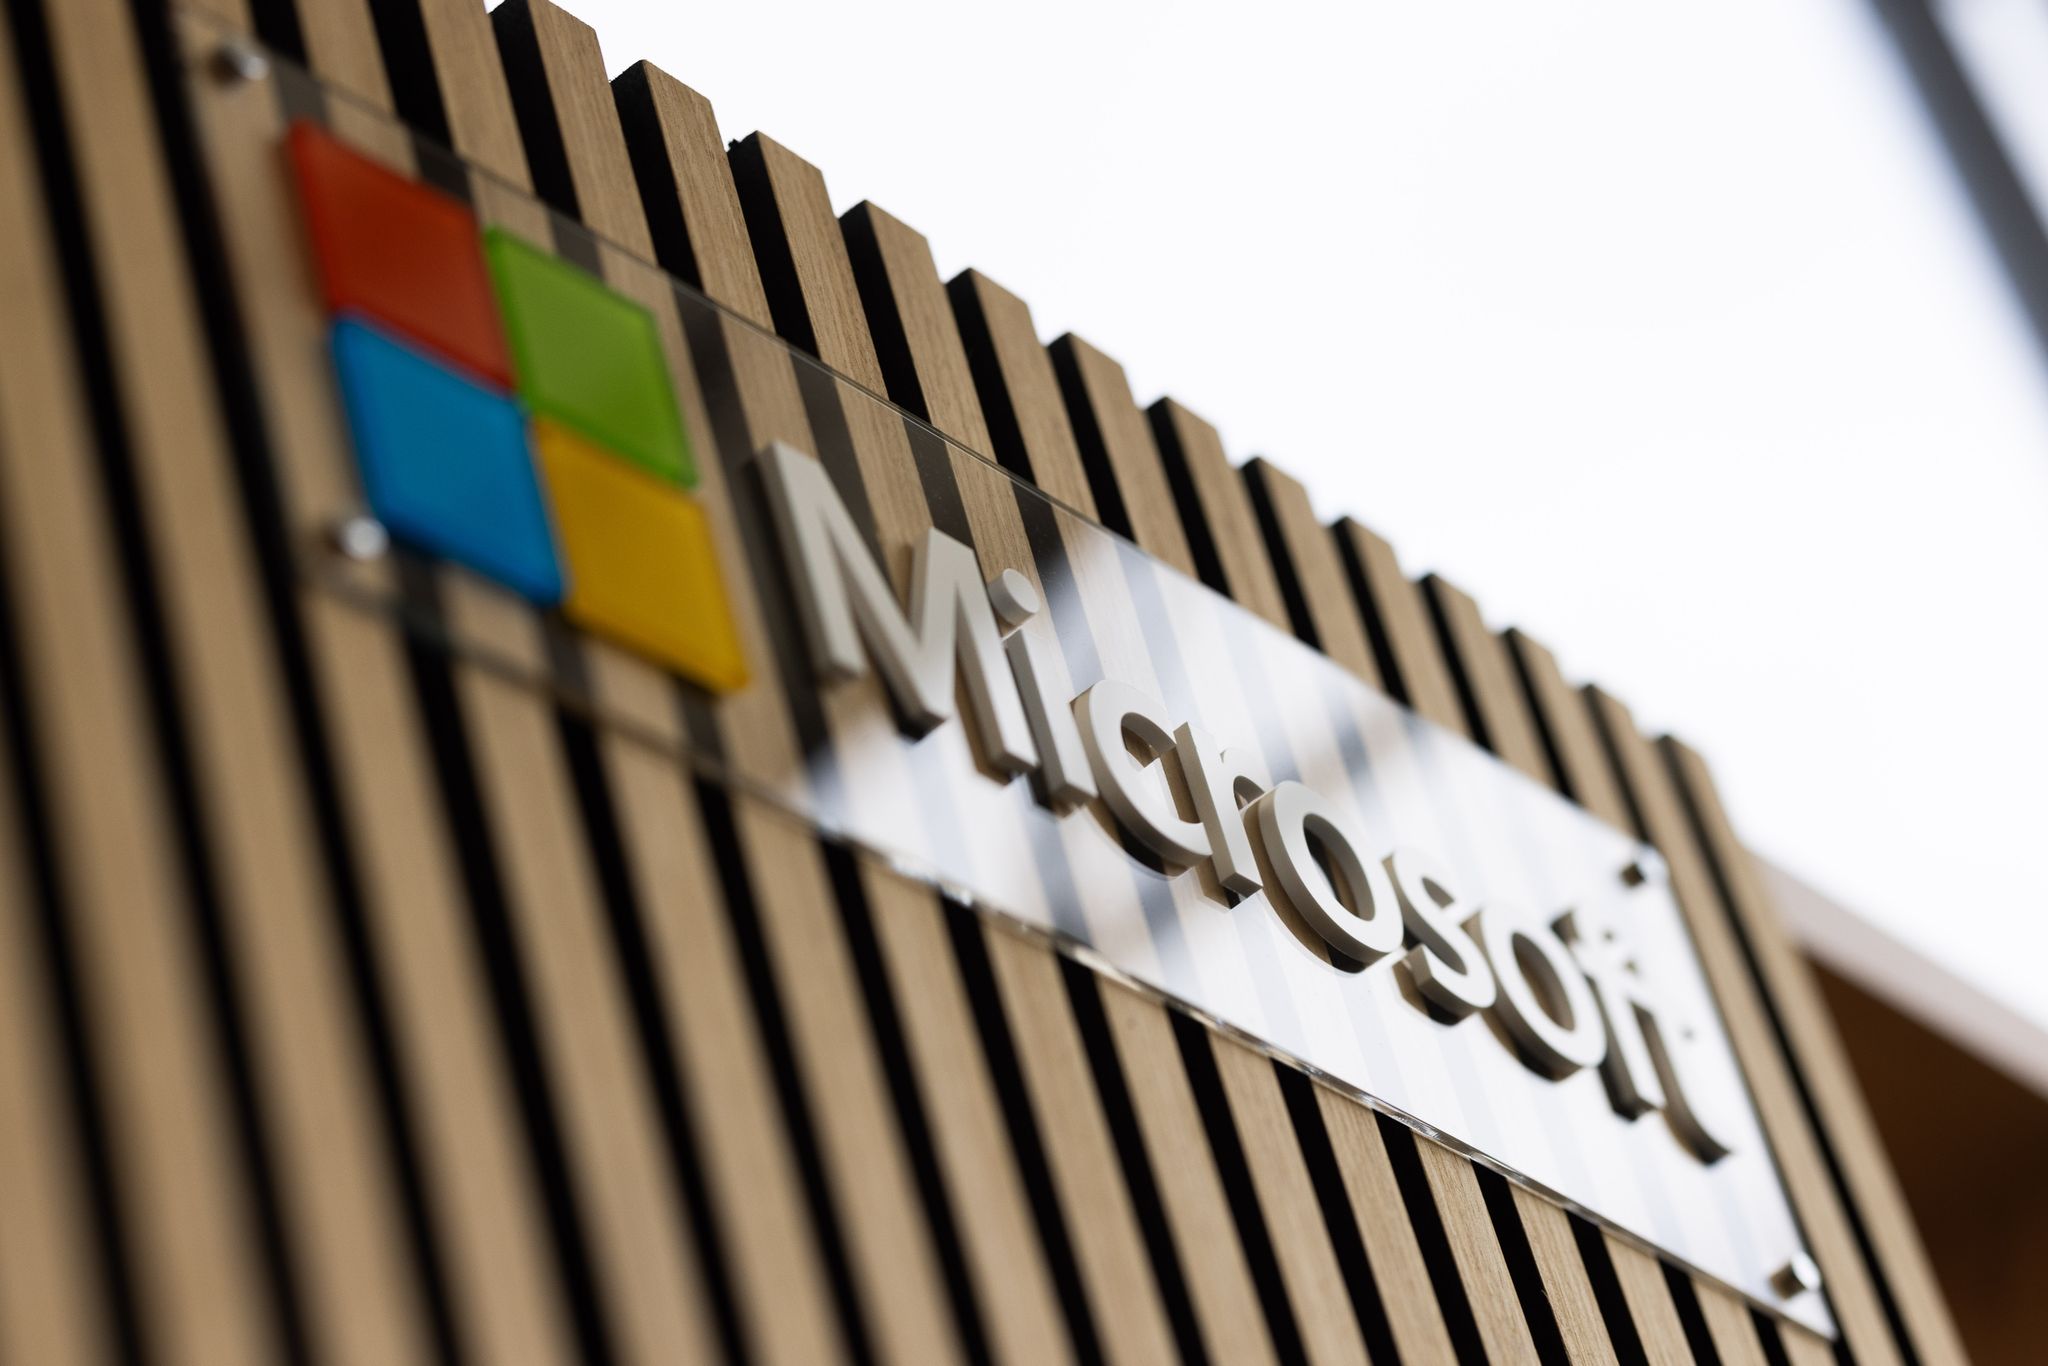 Microsoft wird zu einer treibenden Kraft beim verstärkten Einsatz von KI in verschiedenen Bereichen.